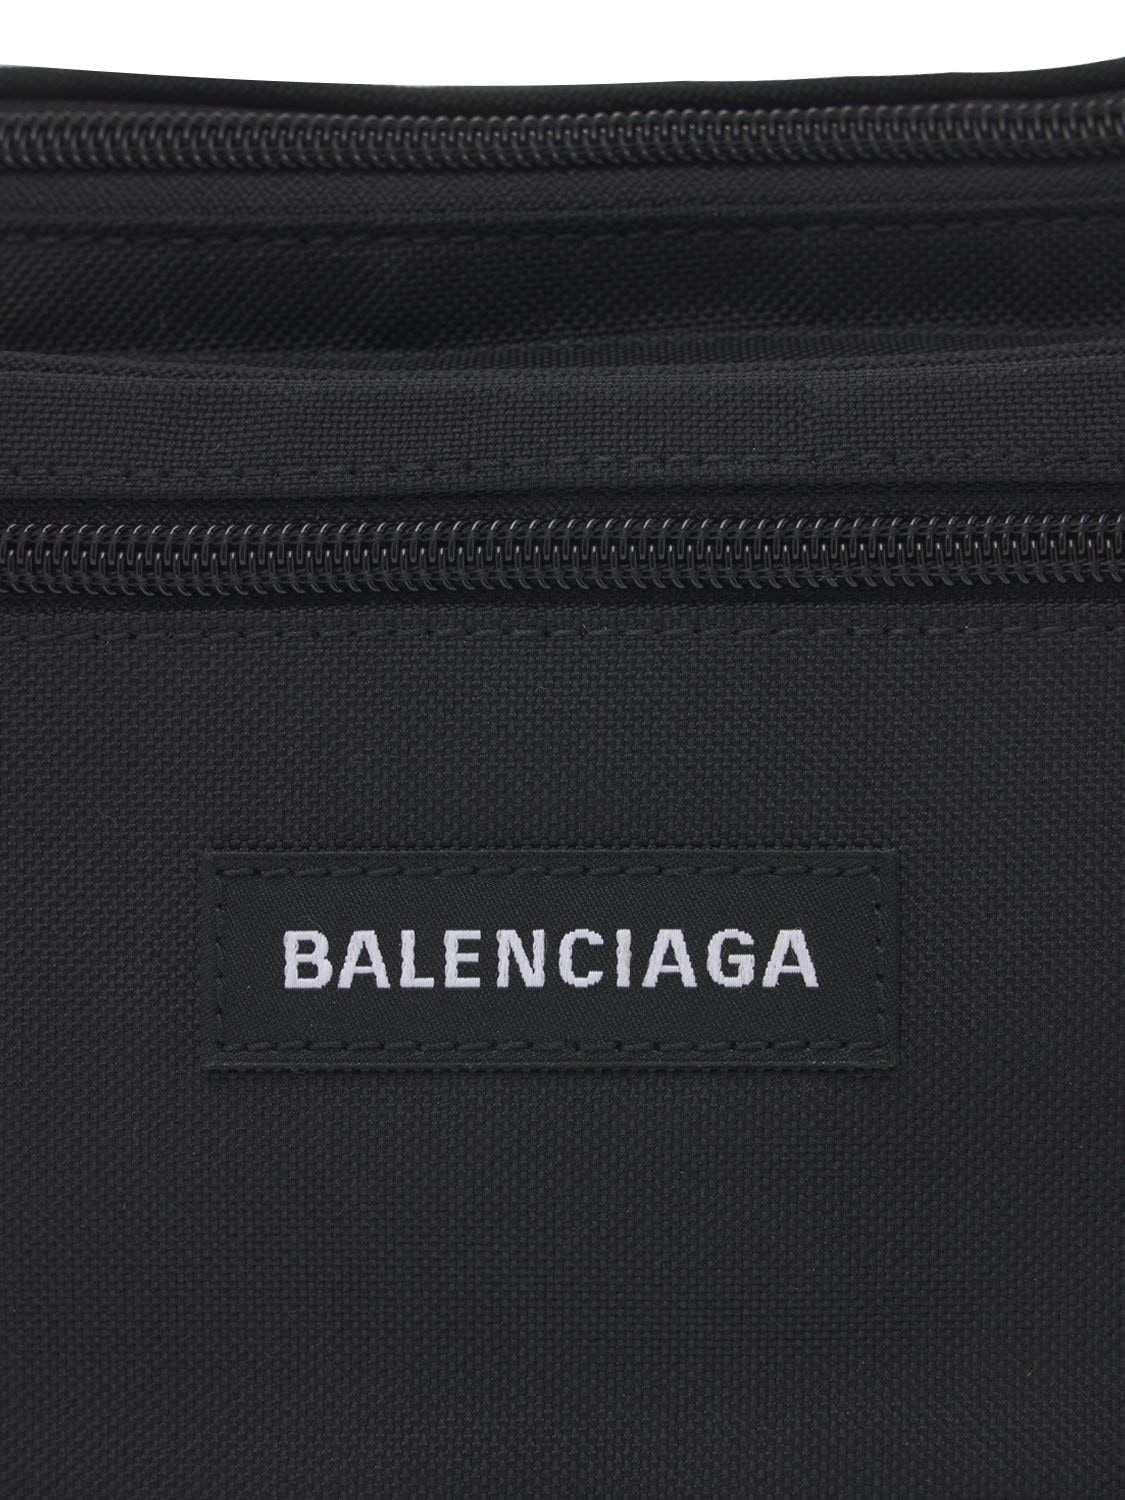 Balenciaga Logo Nylon Belt Bag In Black | ModeSens